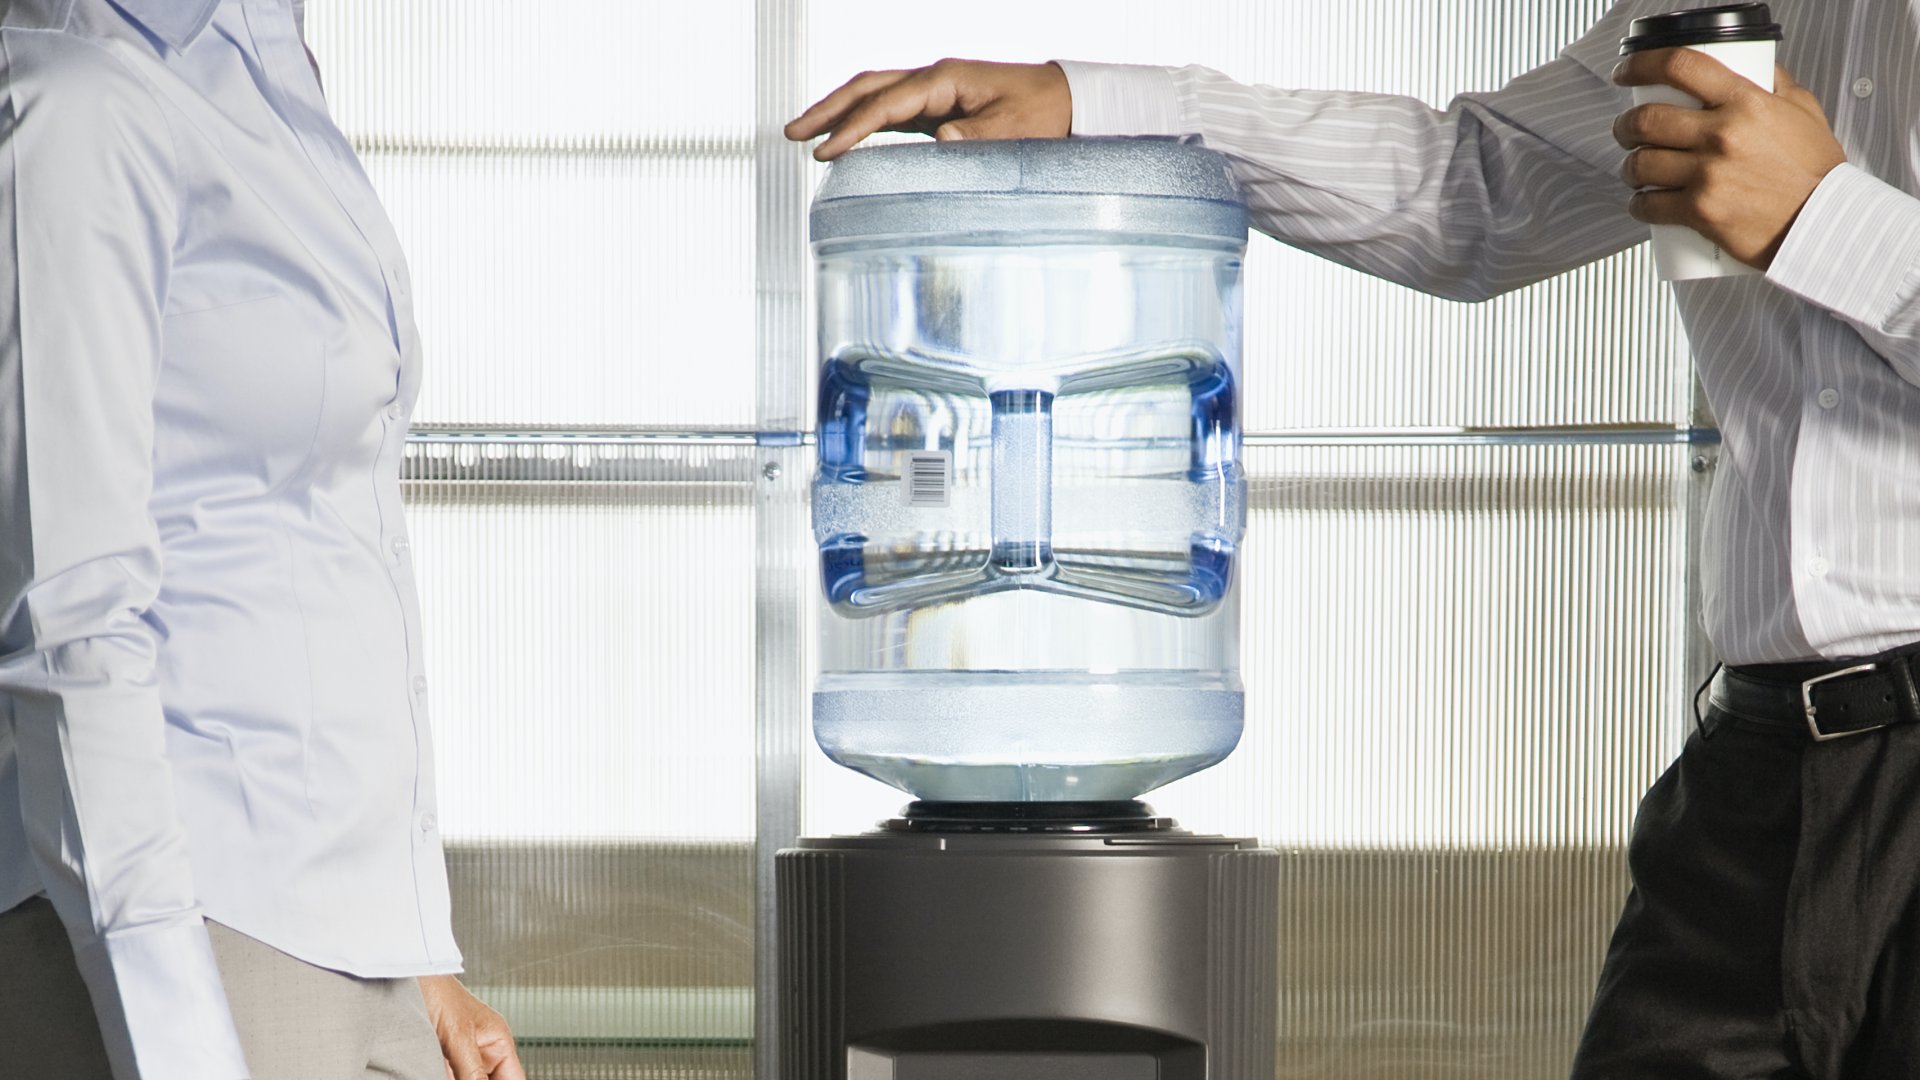 Két irodai dolgozó áll egy vízautomata mellett